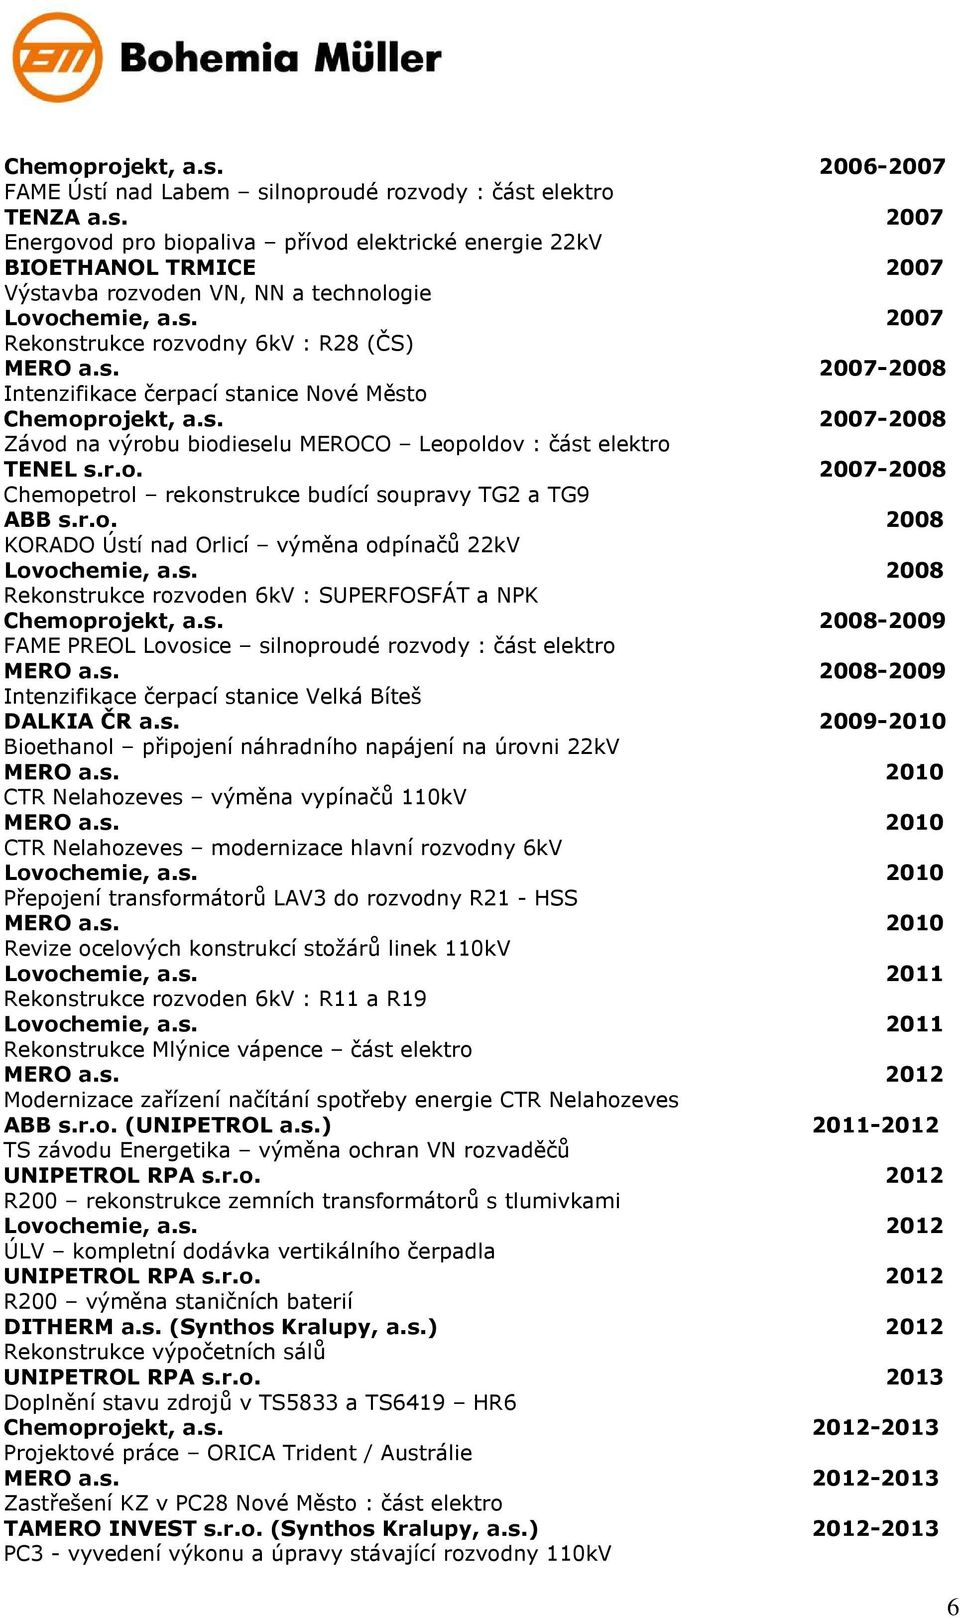 r.o. 2007-2008 Chemopetrol rekonstrukce budící soupravy TG2 a TG9 ABB s.r.o. 2008 KORADO Ústí nad Orlicí výměna odpínačů 22kV Lovochemie, a.s. 2008 Rekonstrukce rozvoden 6kV : SUPERFOSFÁT a NPK Chemoprojekt, a.